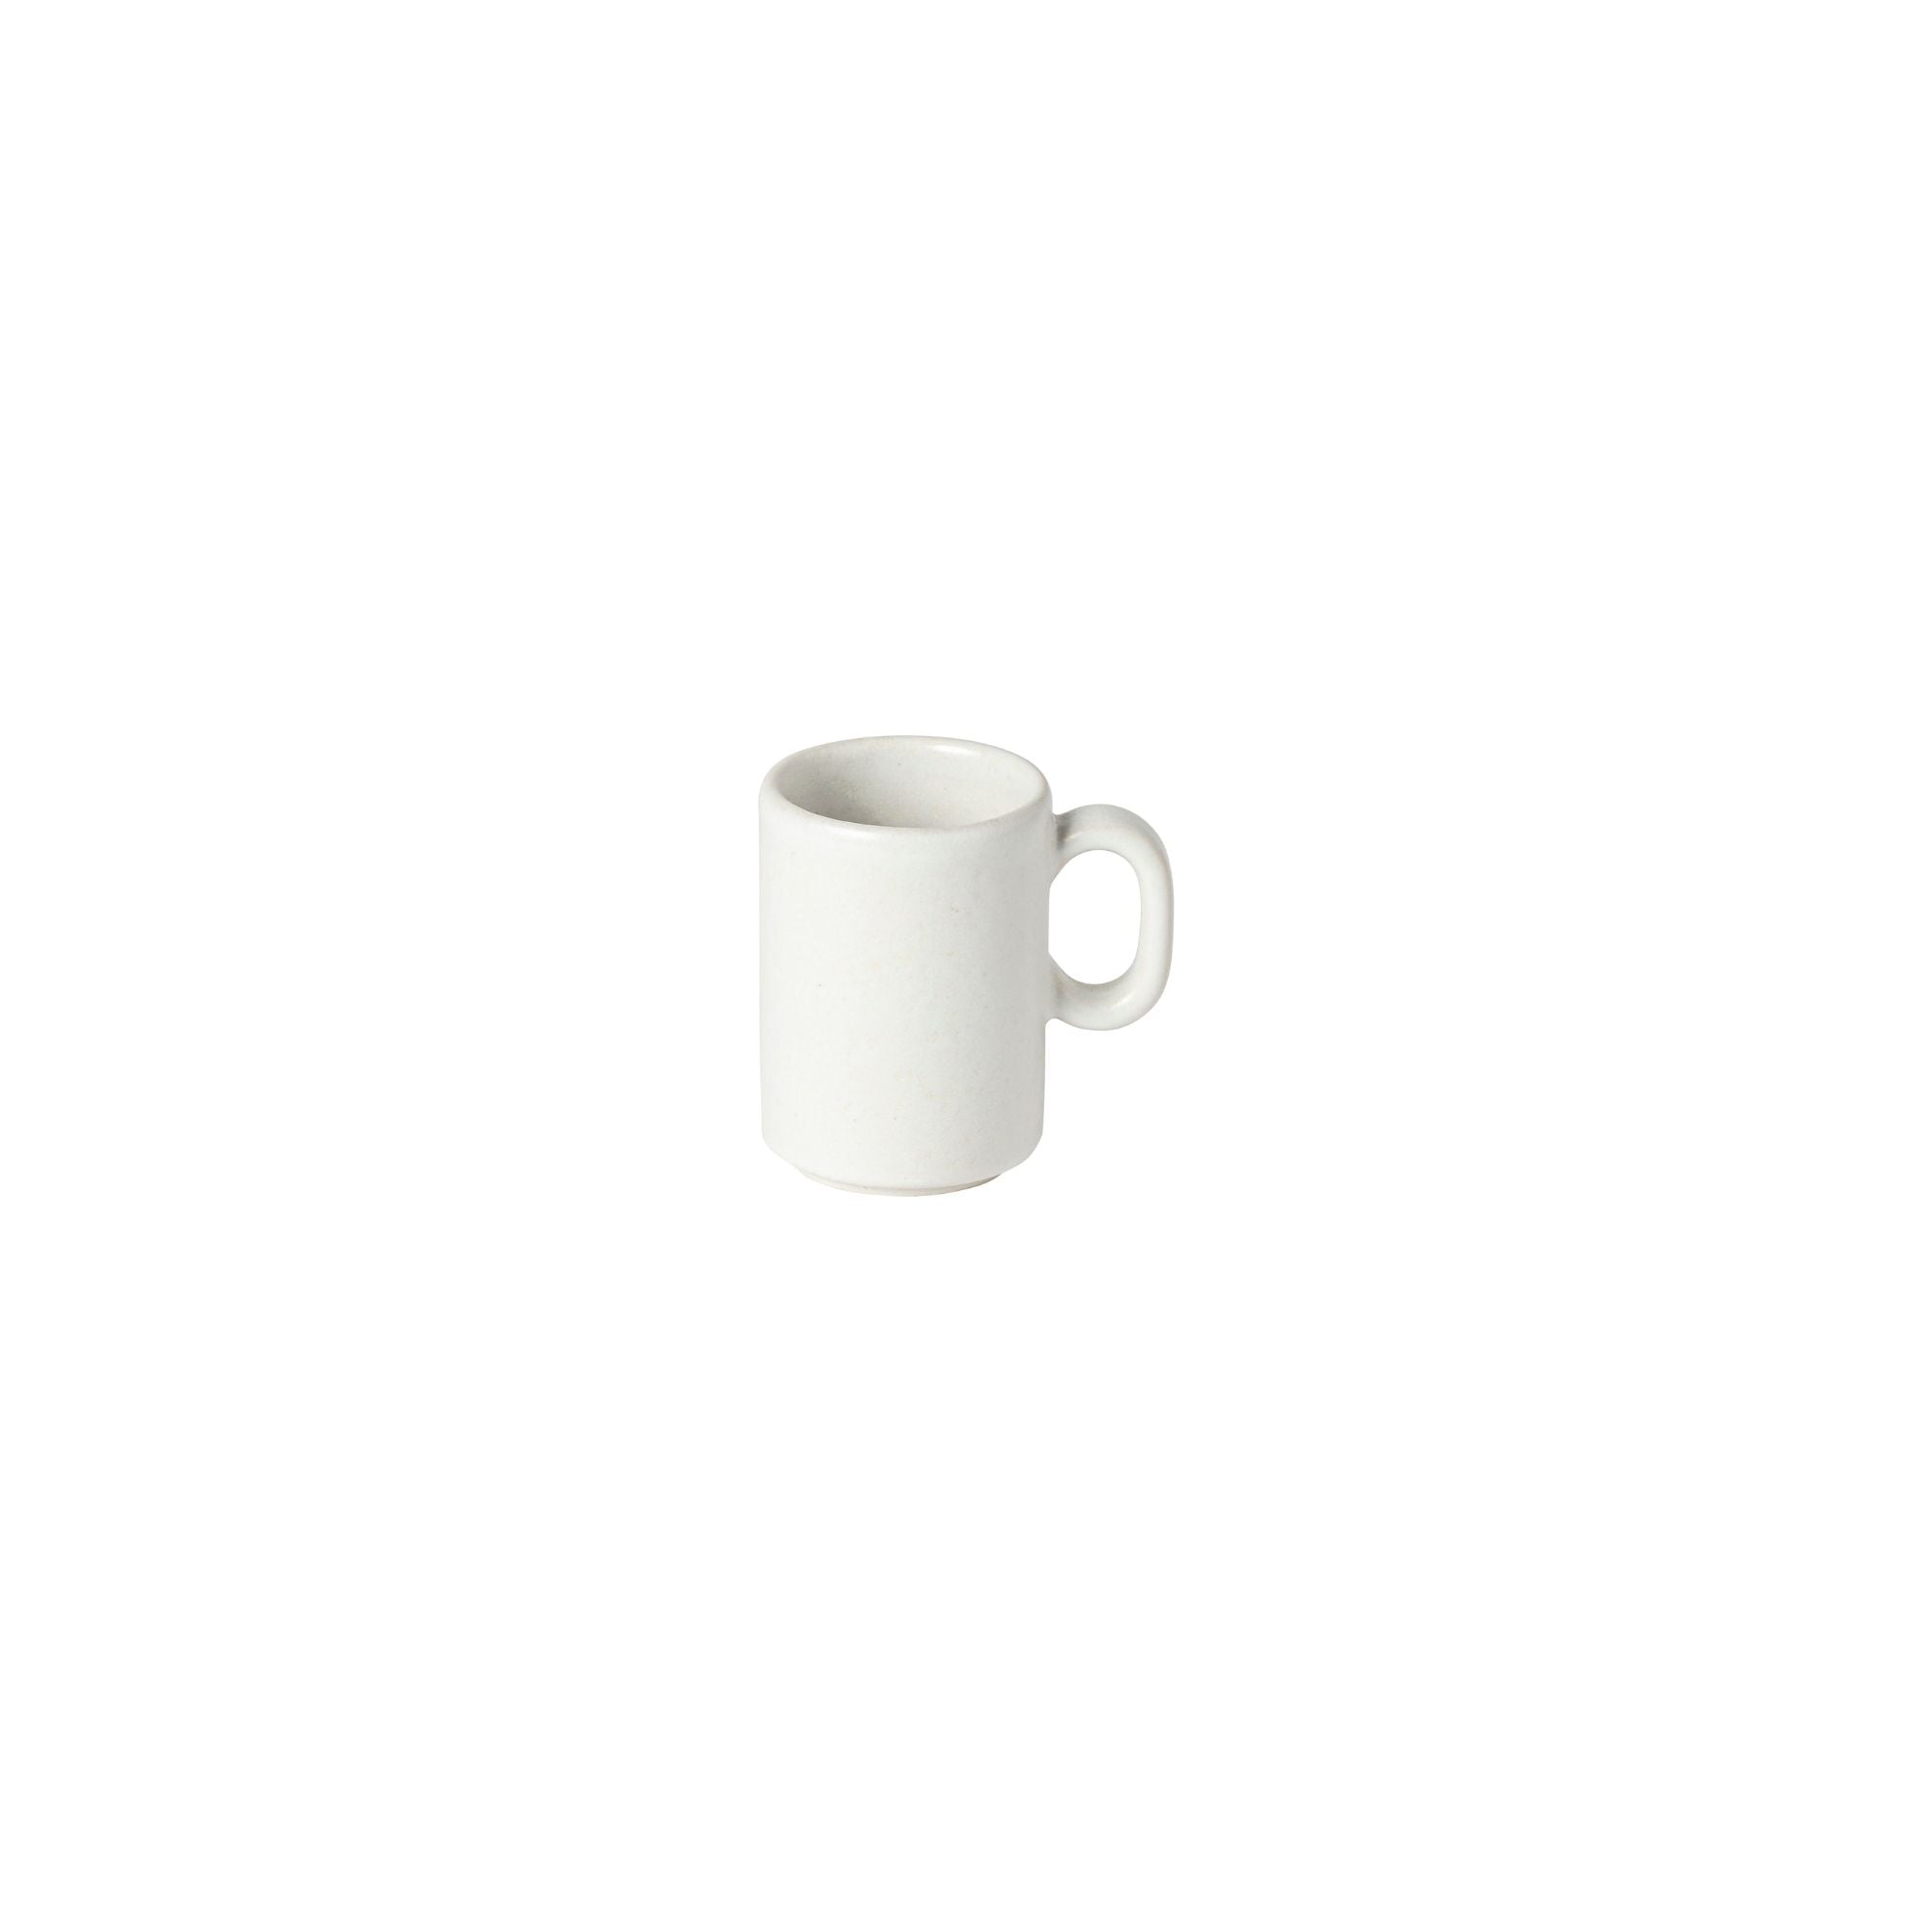 Redonda Espresso Cup 2.5oz